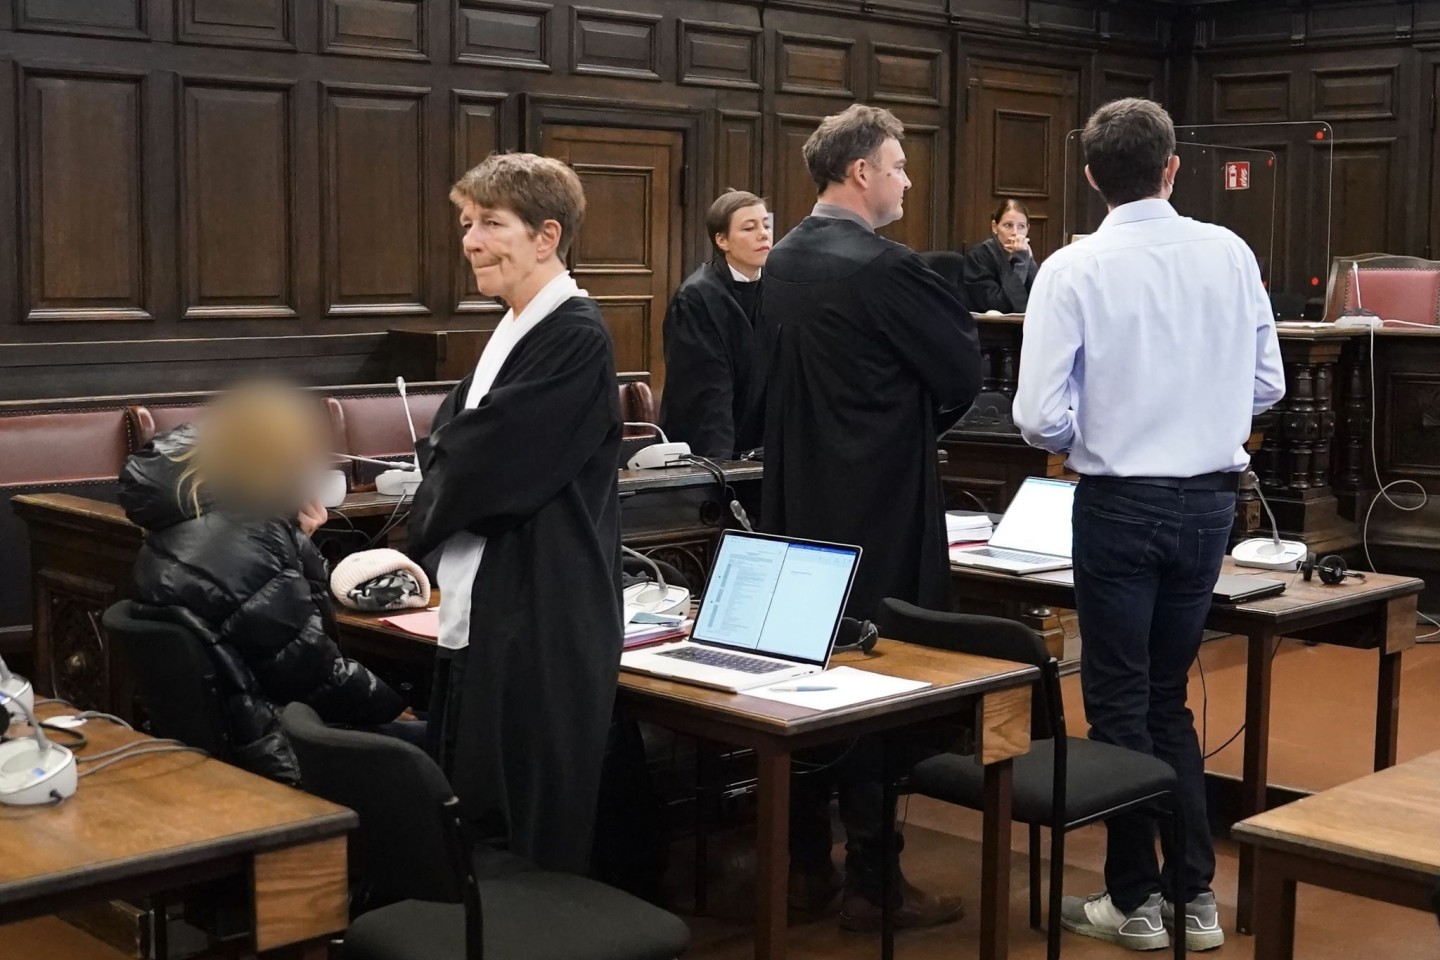 Das angeklagte Ehepaar (l und r) zu Beginn des Prozesses im Strafjustizgebäude in Hamburg.